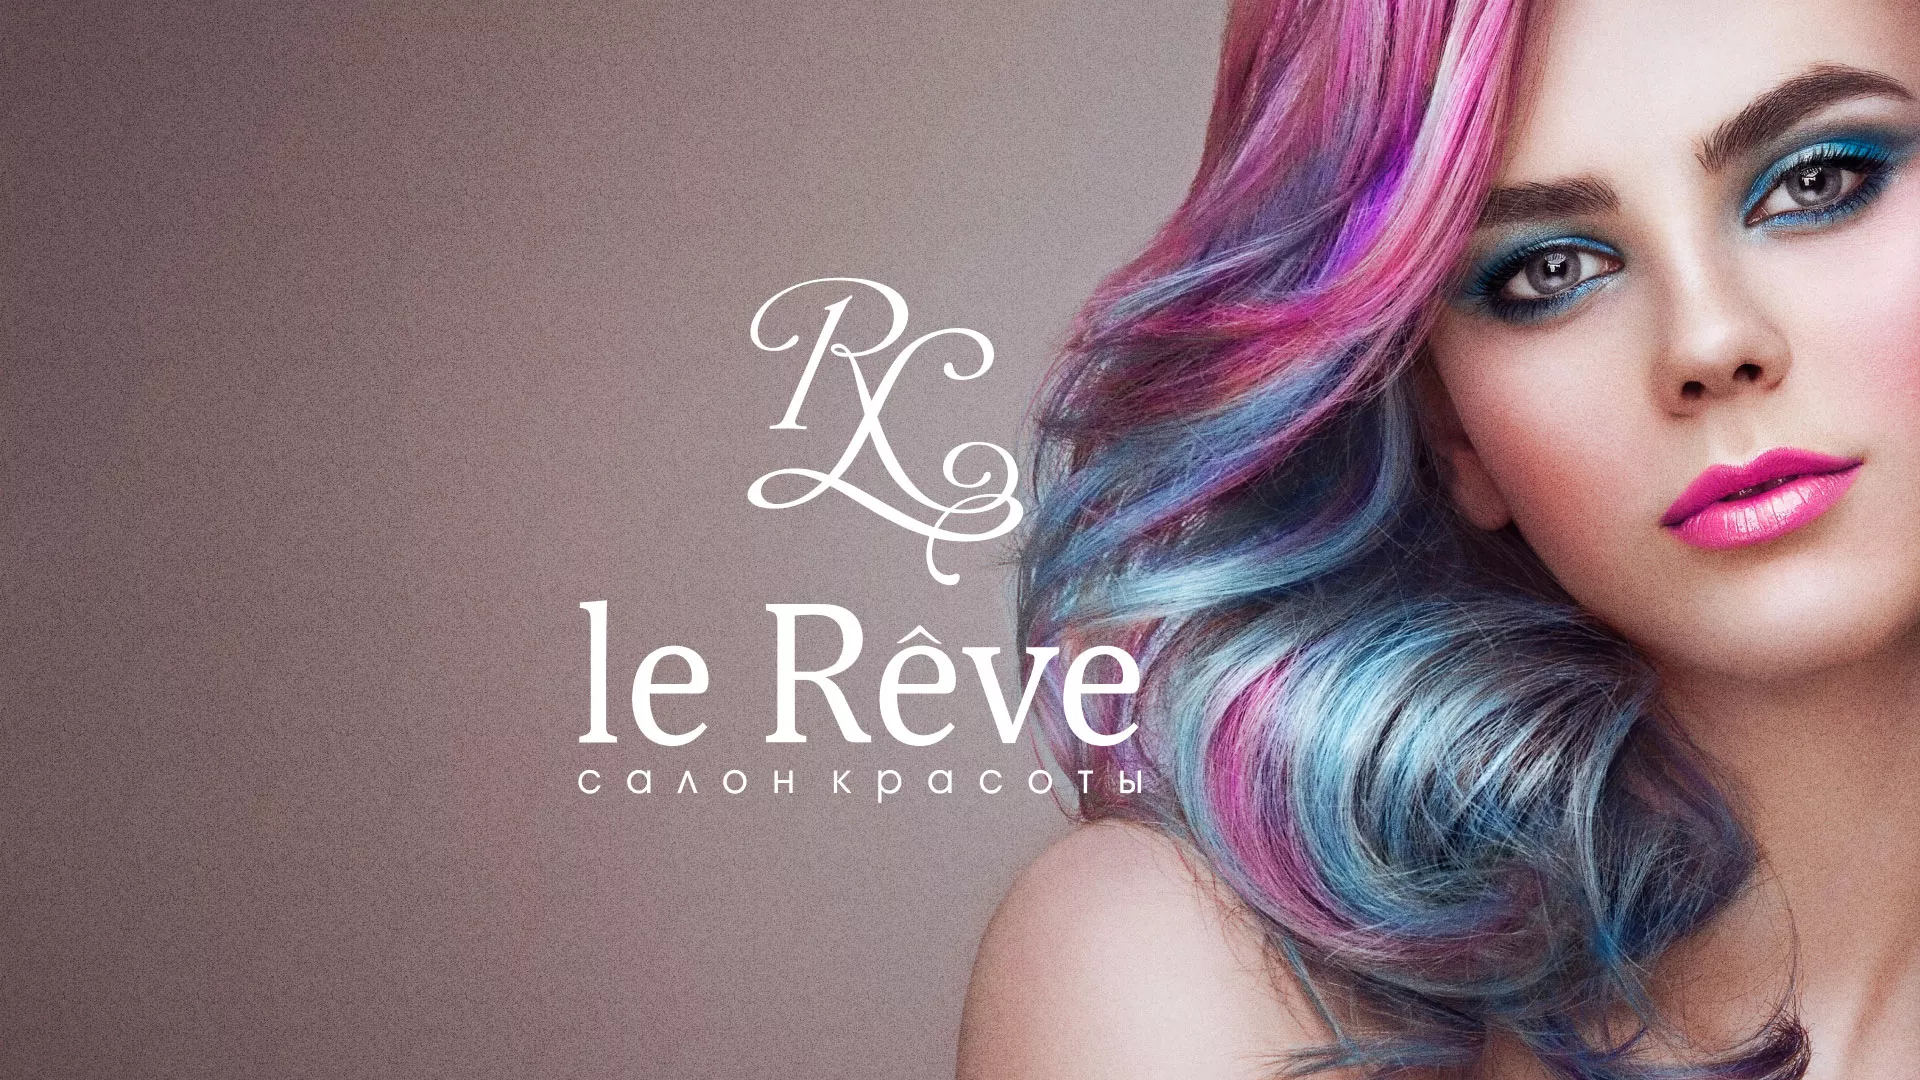 Создание сайта для салона красоты «Le Reve» в Елабуге